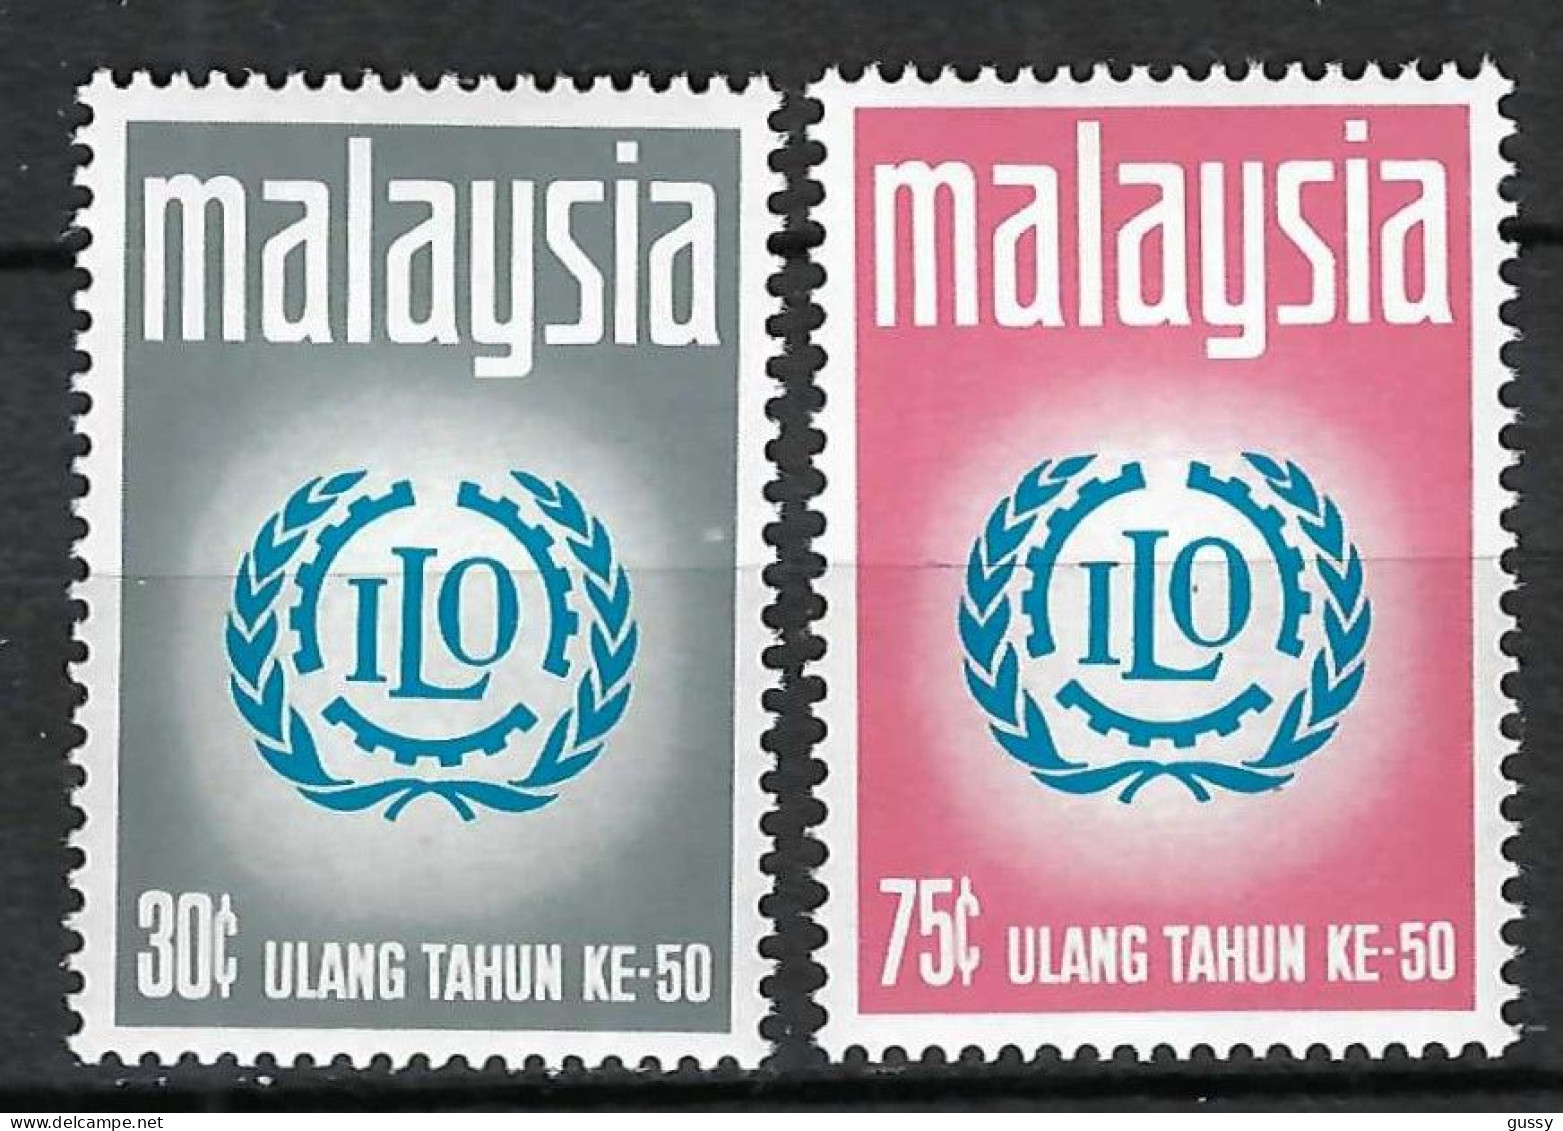 MALAYSIE Ca.1969: Lot De TP "50 Ans De L' OIT" Neufs** - ILO